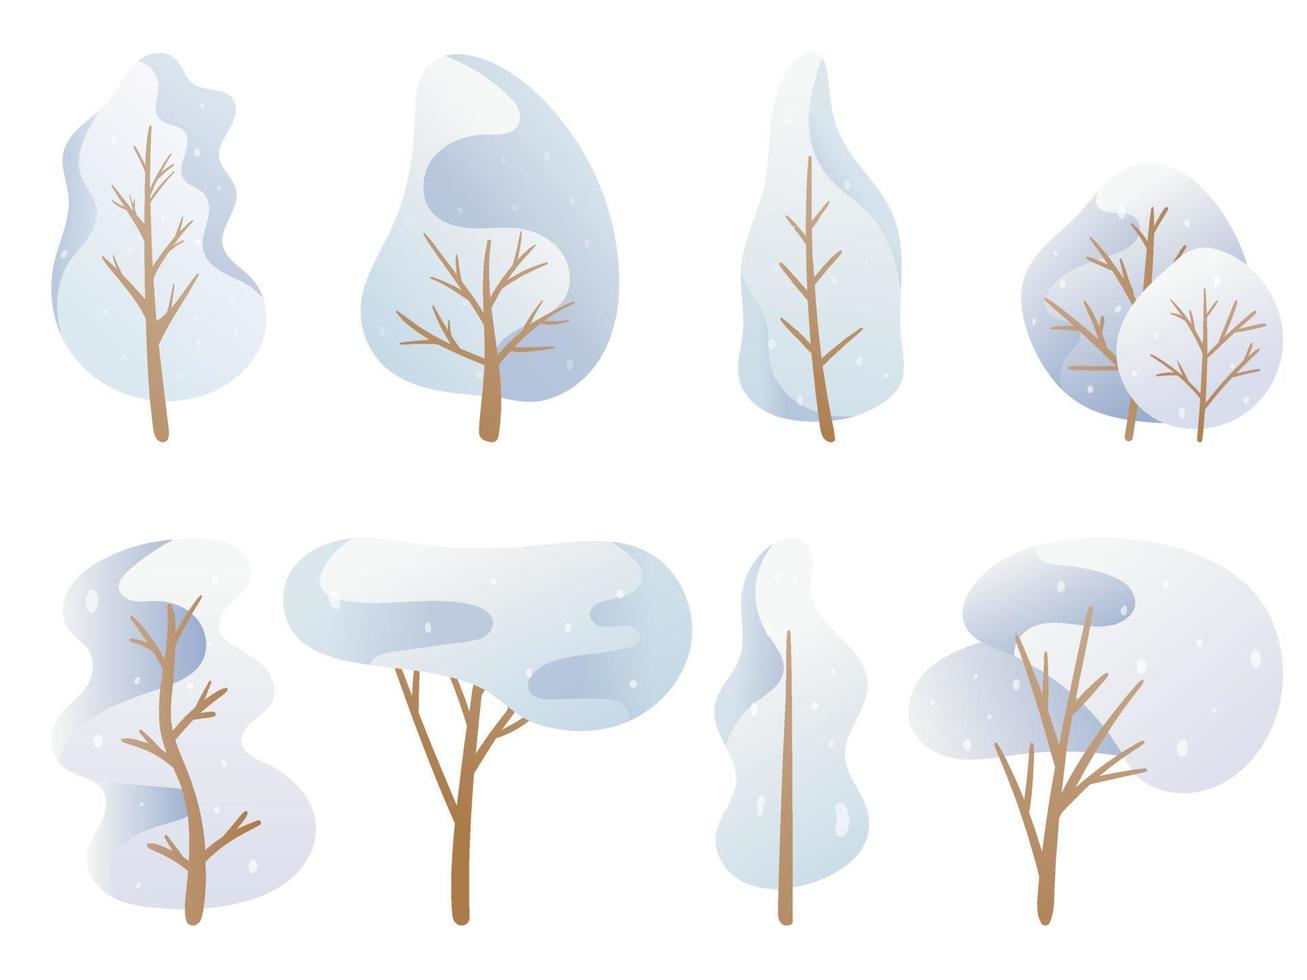 ilustração vetorial. um conjunto de imagens de doodle. árvores de desenhos animados em uma paleta azul, coroa de inverno coberta de neve de diferentes formas. decoração de fundo vetor